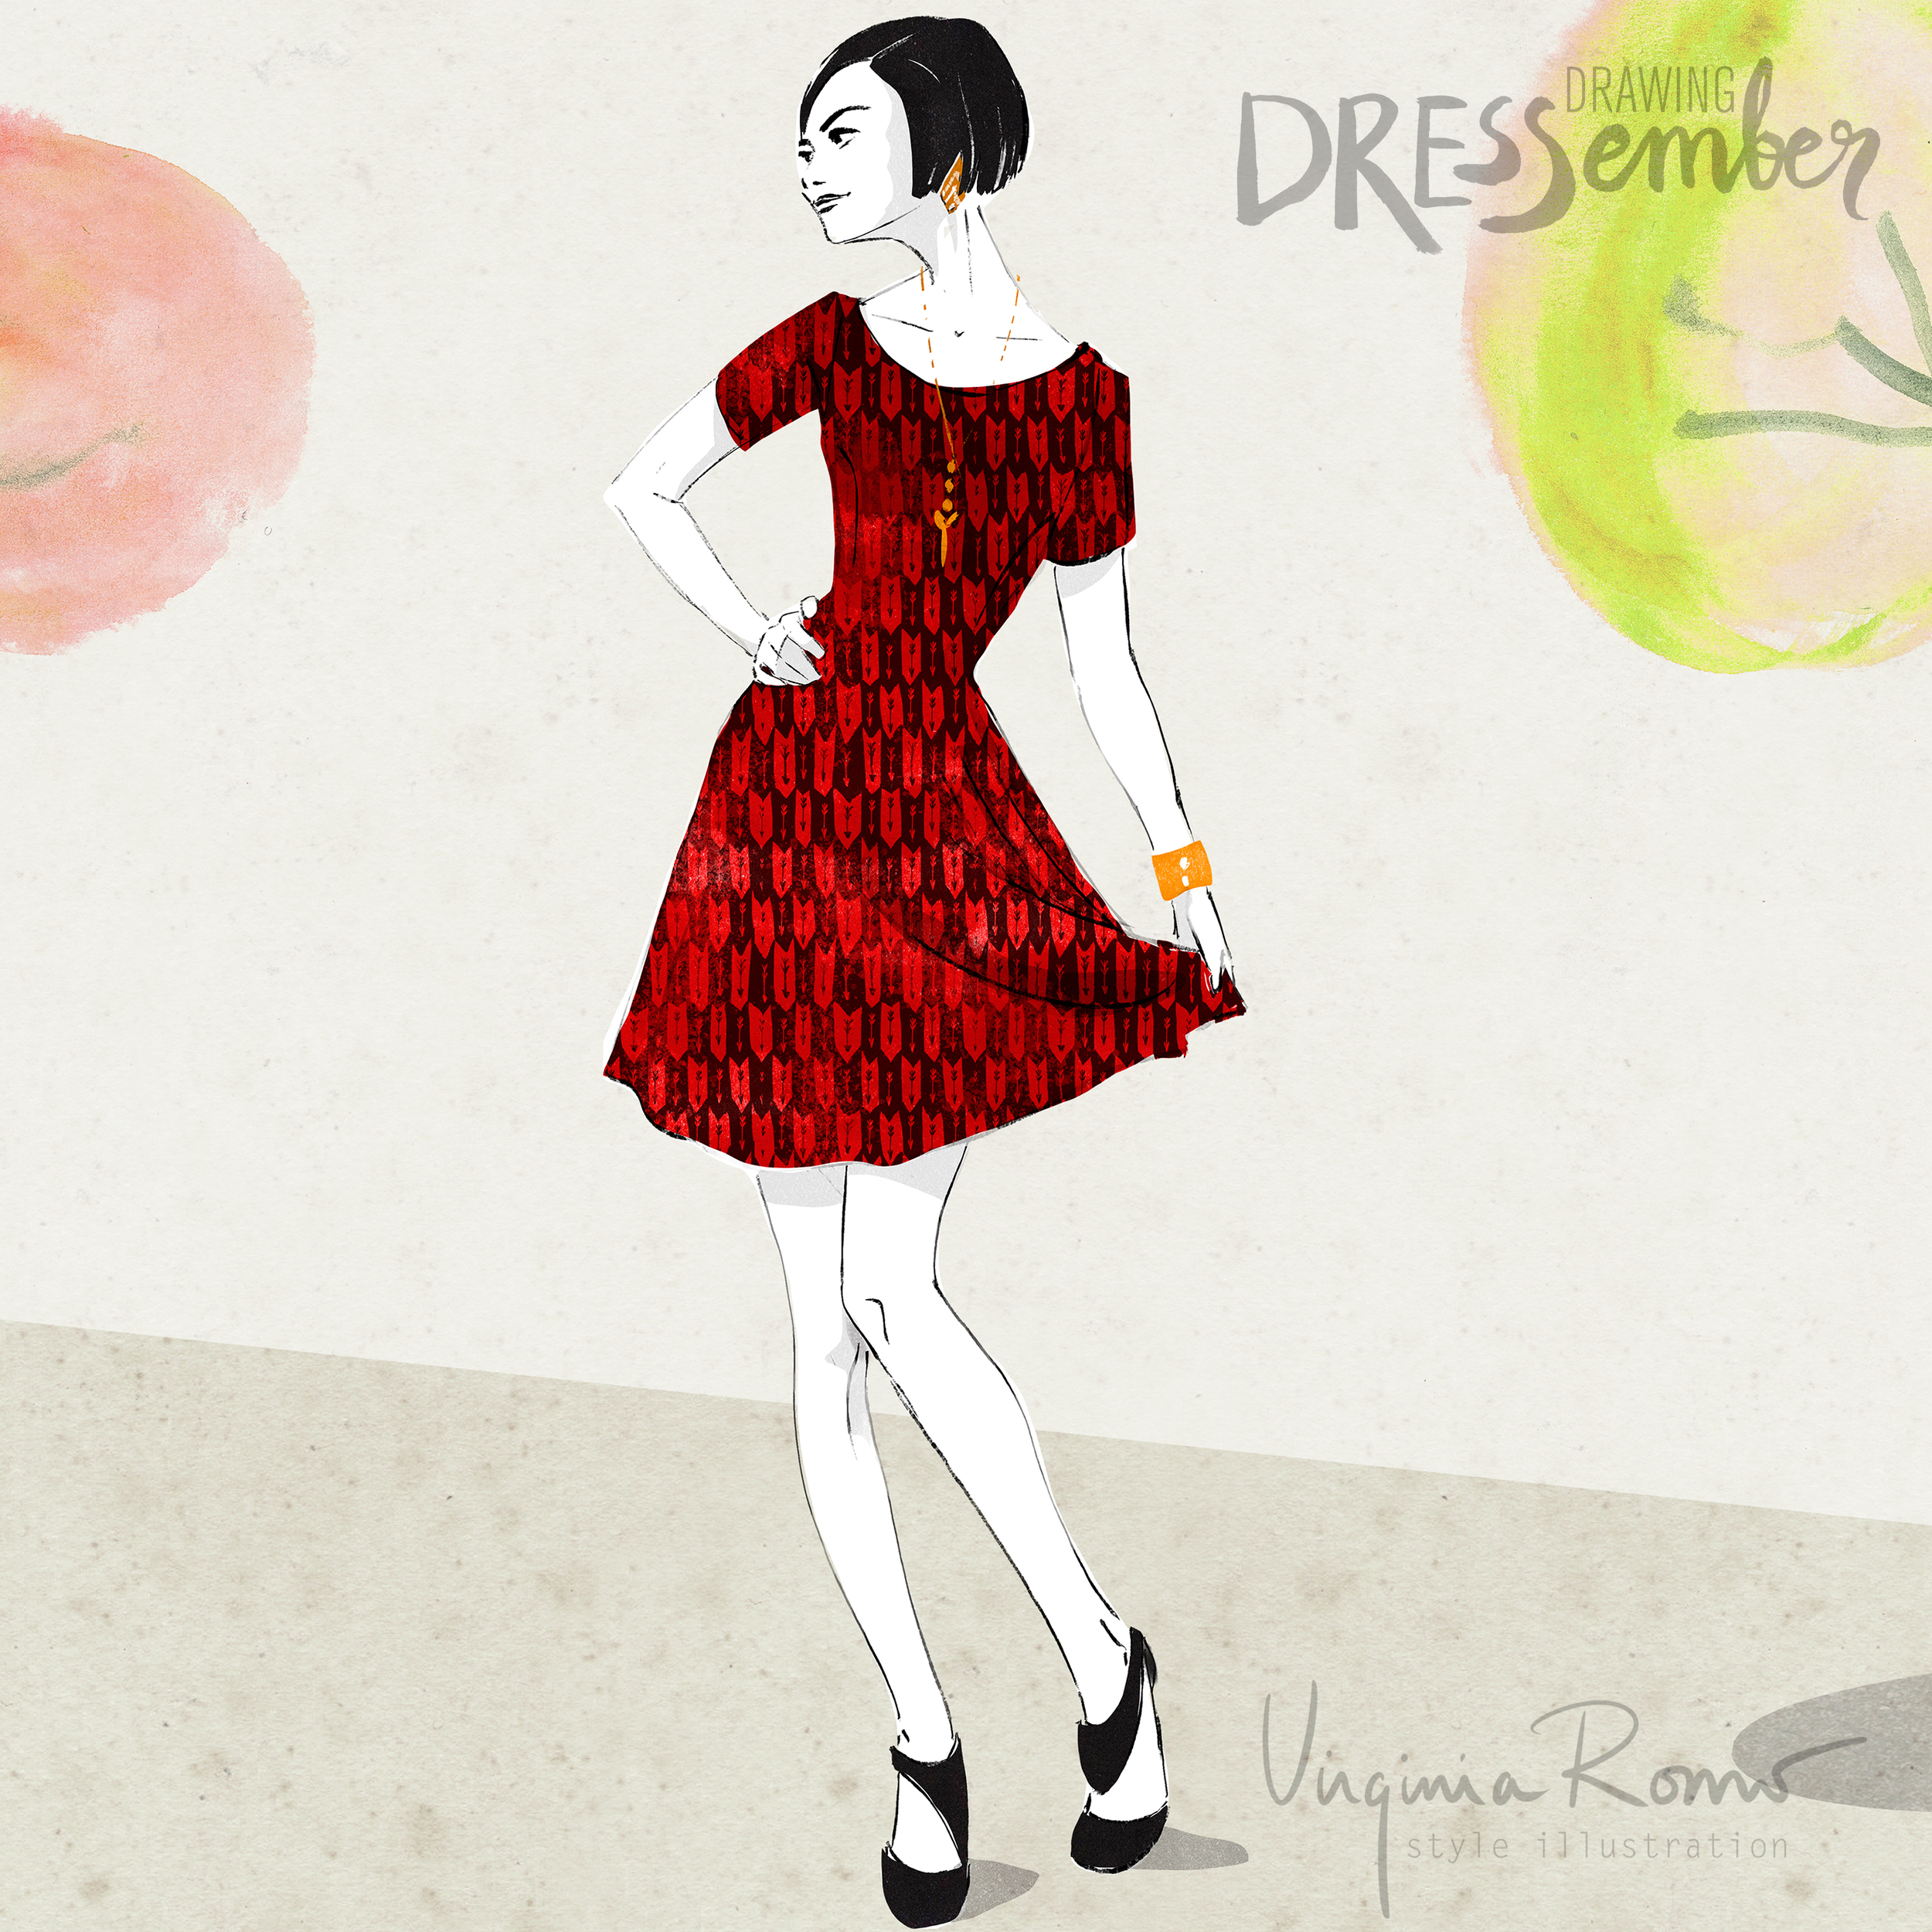 dressember-VirginiaRomoIllustration-04-dresswell-IG.jpg